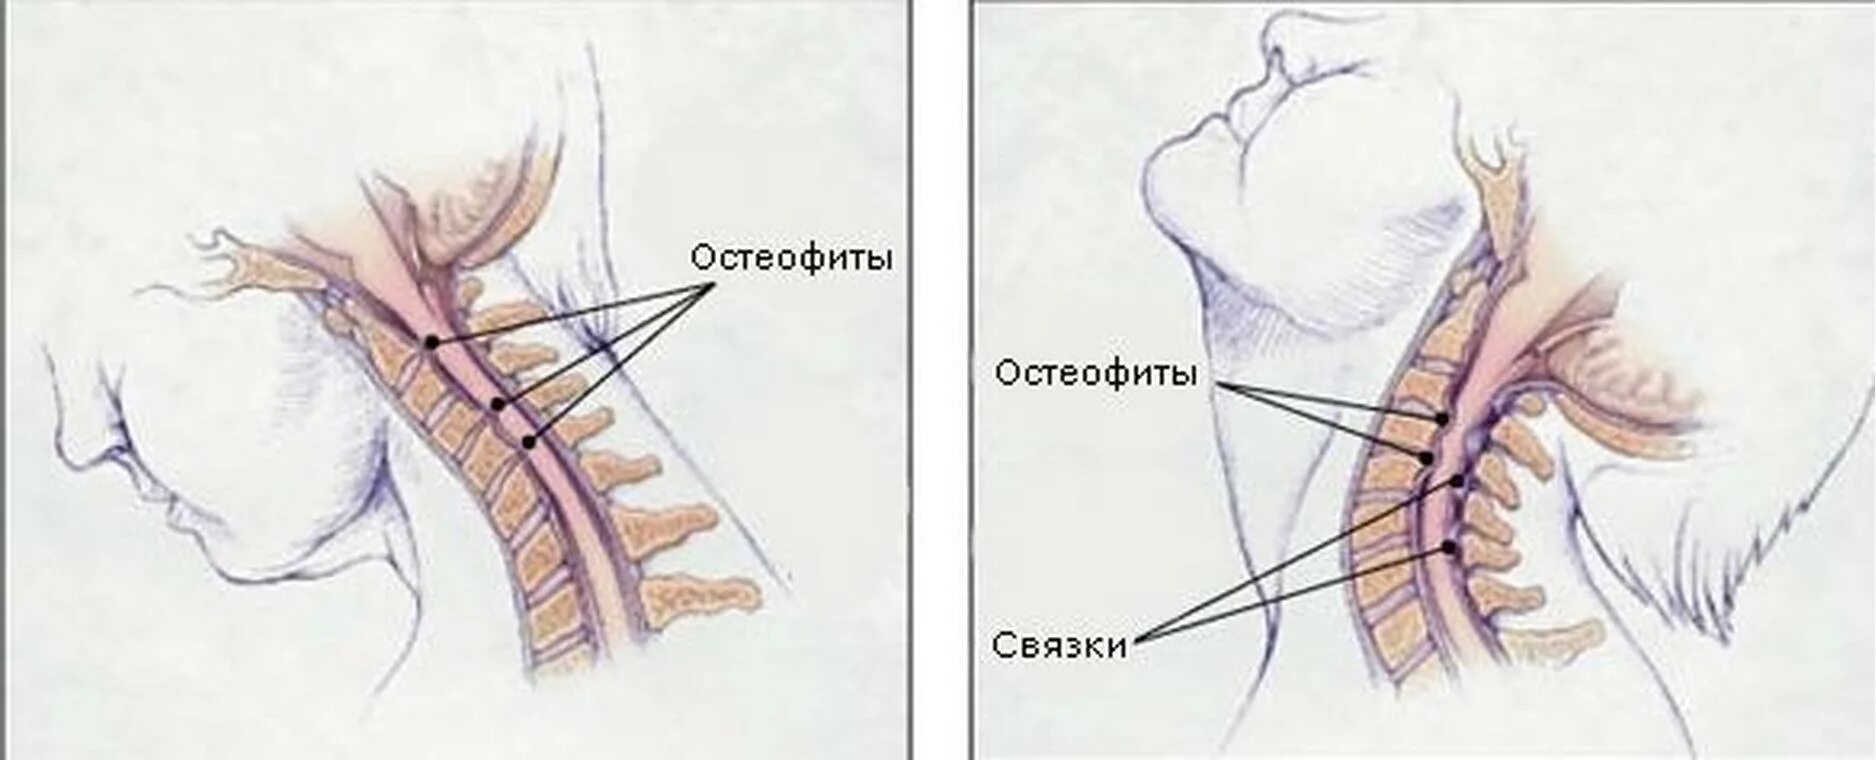 Остеофиты что это такое и как лечить. Остеофиты шейного отдела позвоночника. Краевые остеофиты шейного отдела позвоночника. Задние остеофиты шейного отдела позвоночника. Спондилёз шейного отдела позвоночника что это такое.